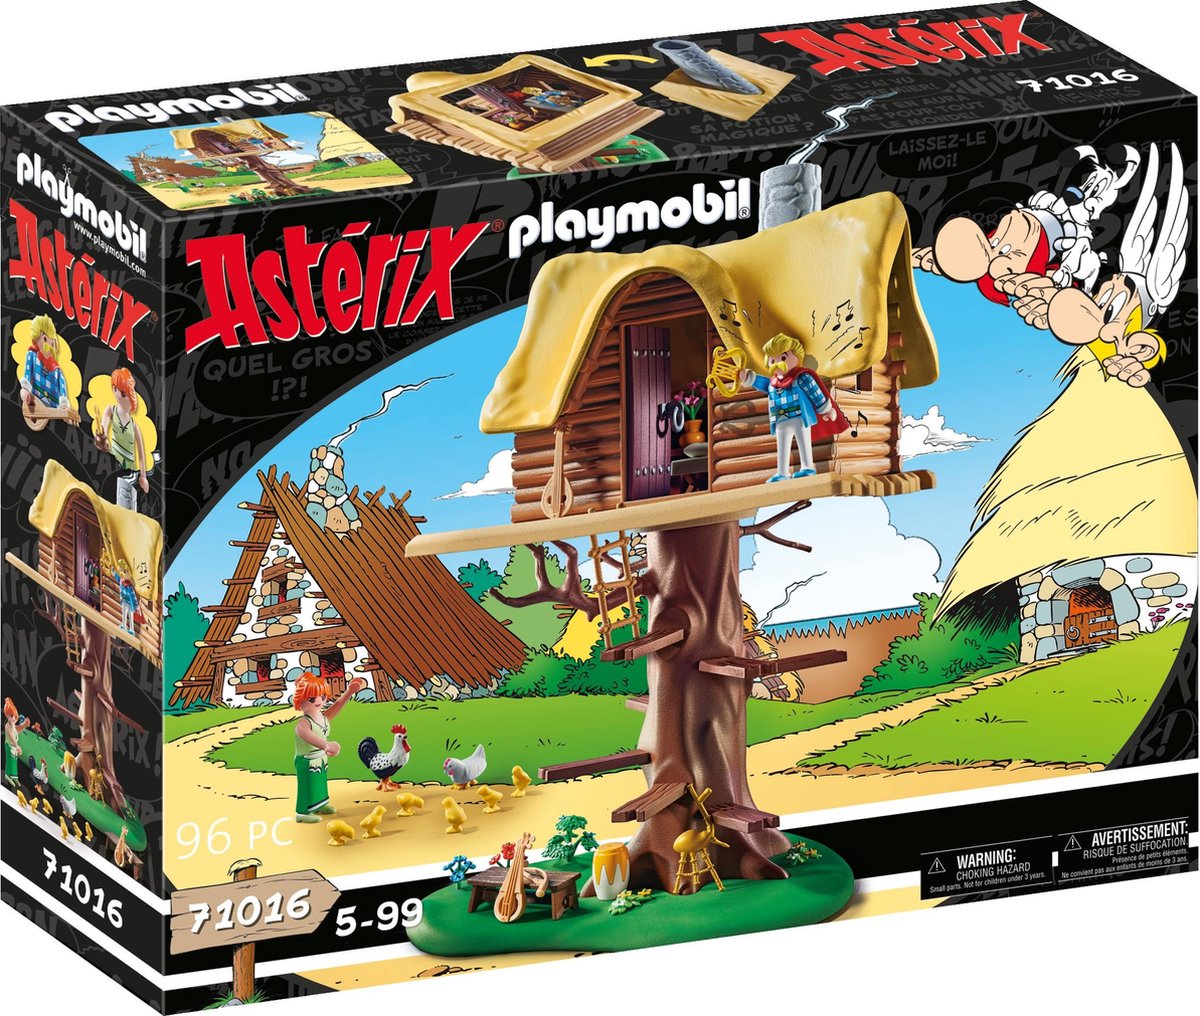   Asterix: Kakofonix met boomhut - 71016